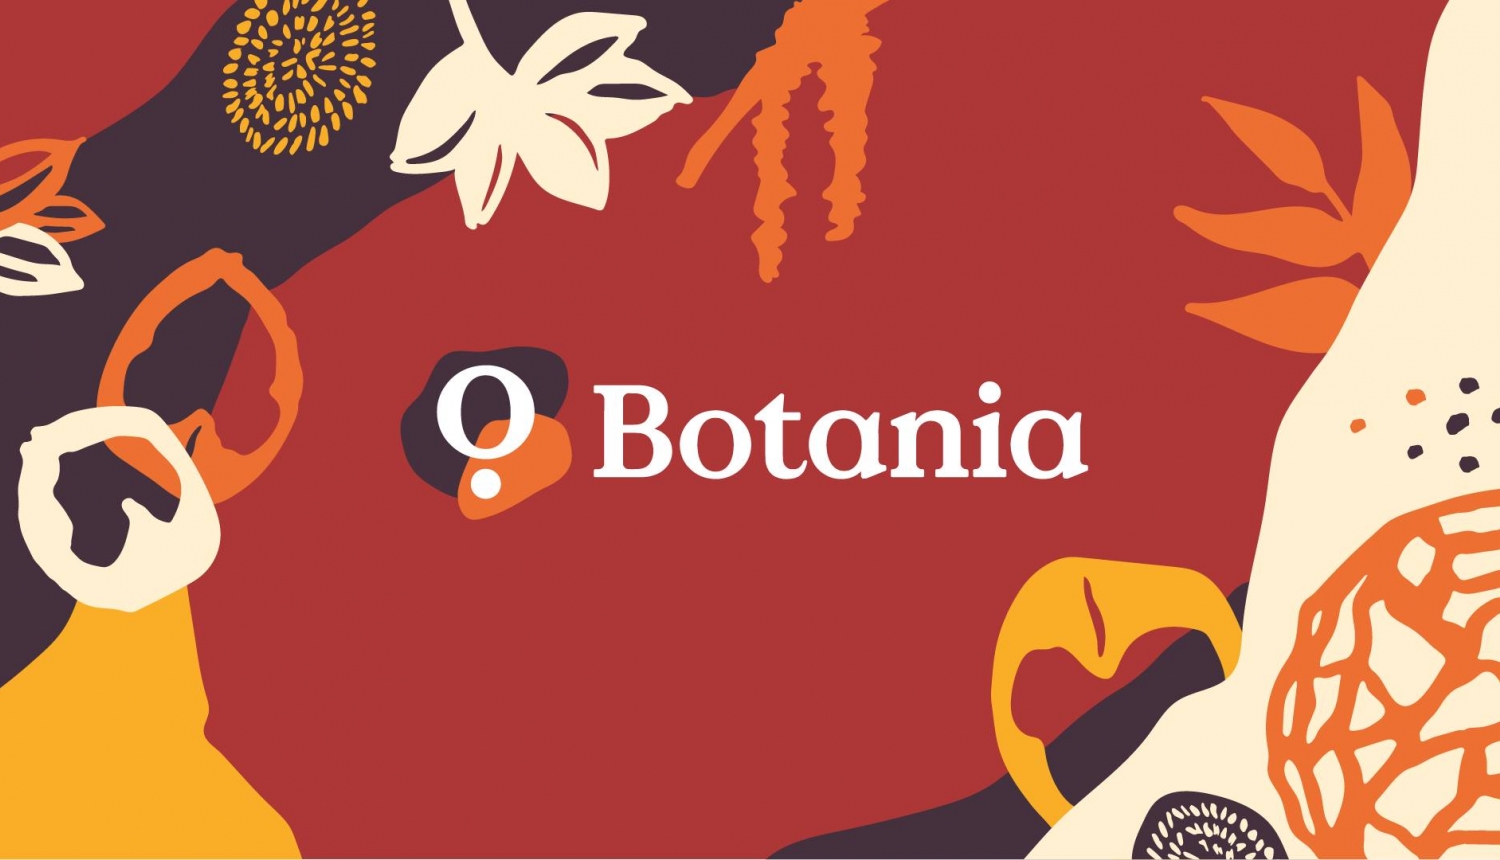 Botania logo